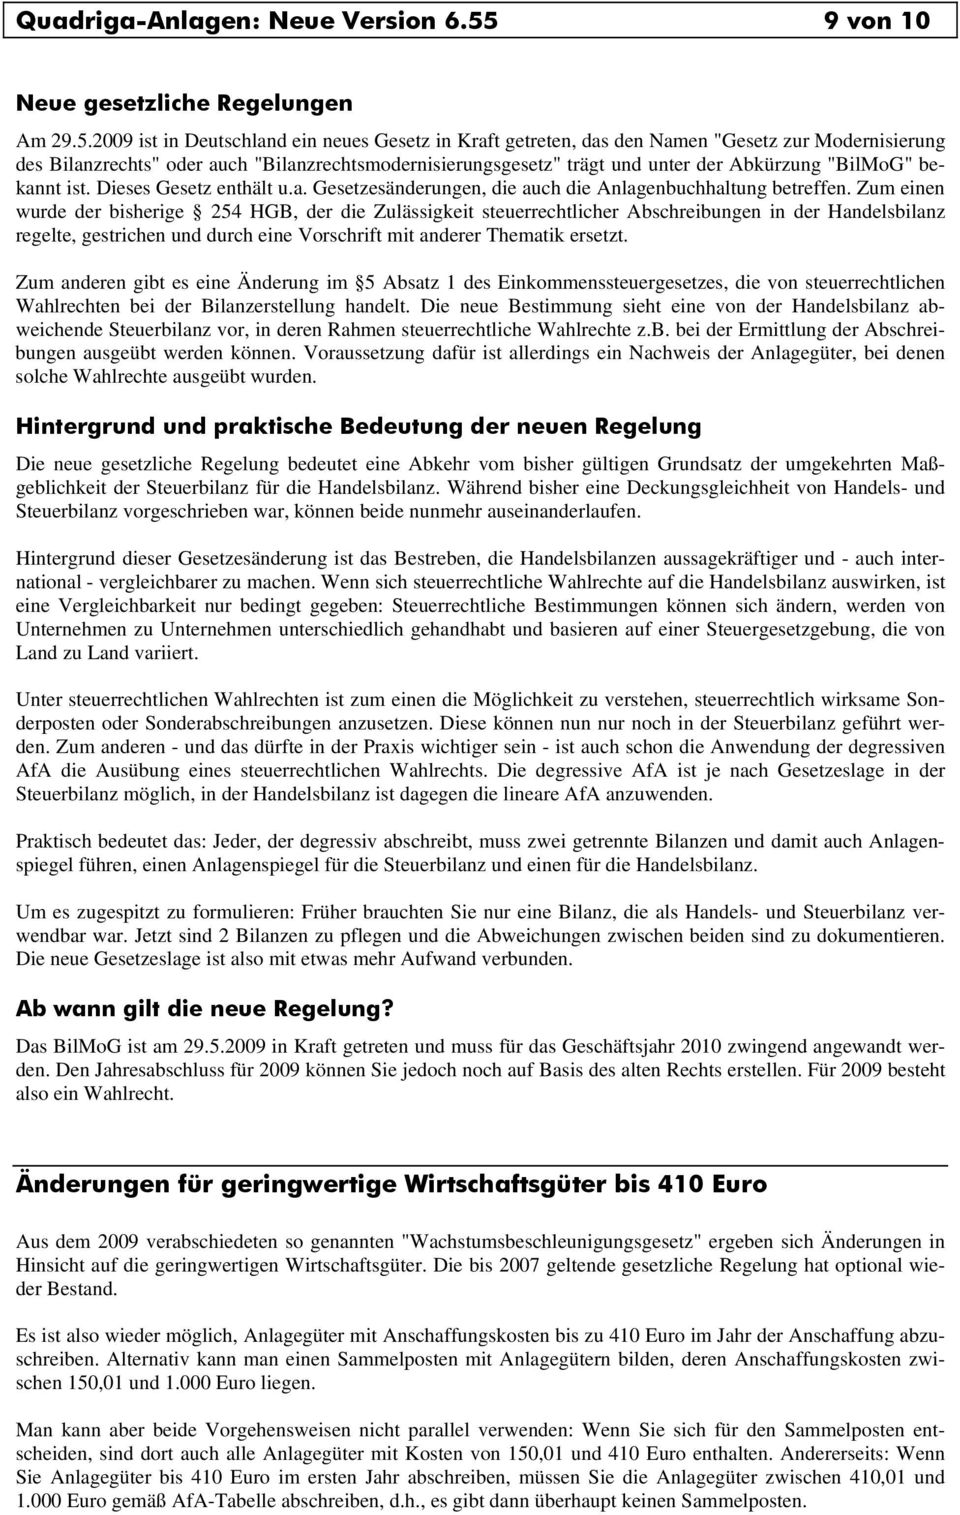 2009 ist in Deutschland ein neues Gesetz in Kraft getreten, das den Namen "Gesetz zur Modernisierung des Bilanzrechts" oder auch "Bilanzrechtsmodernisierungsgesetz" trägt und unter der Abkürzung